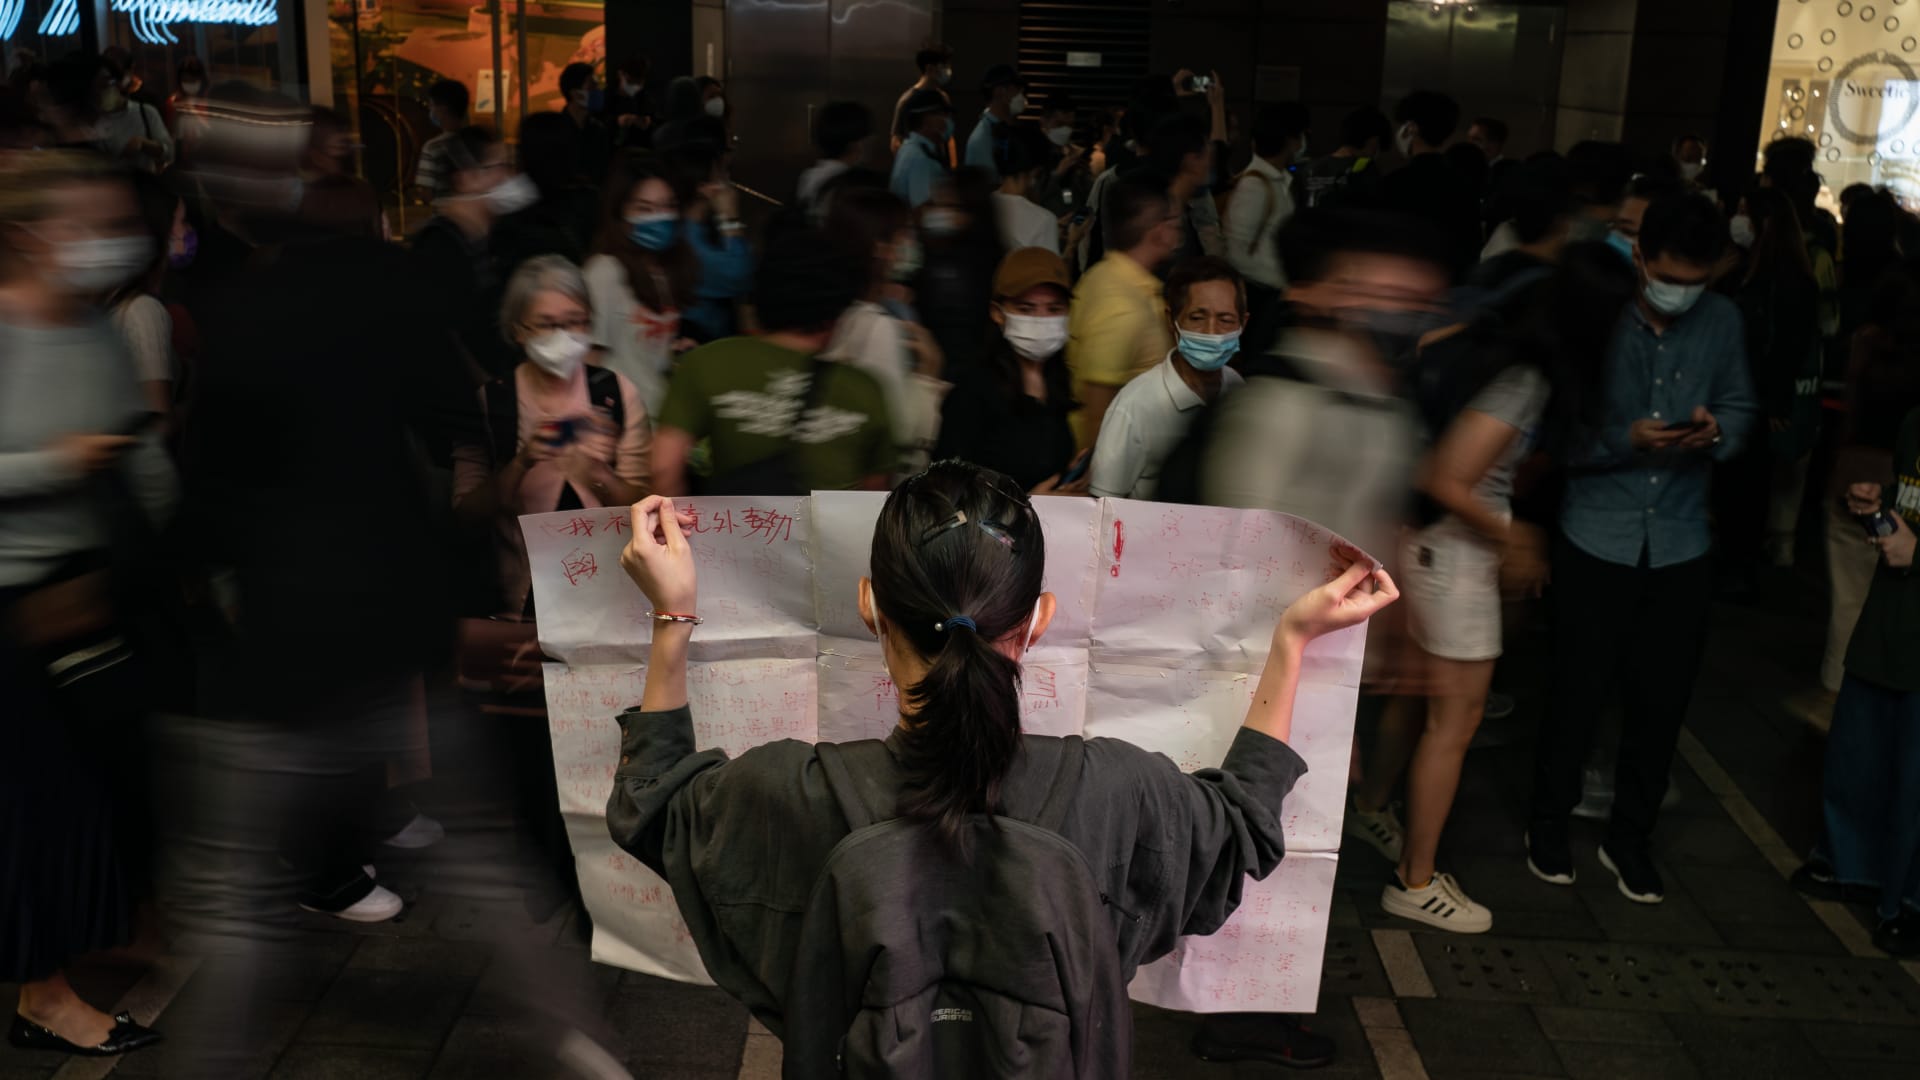 اتساع رقعة احتجاجات "الأوراق البيضاء" من الصين إلى هونغ كونغ